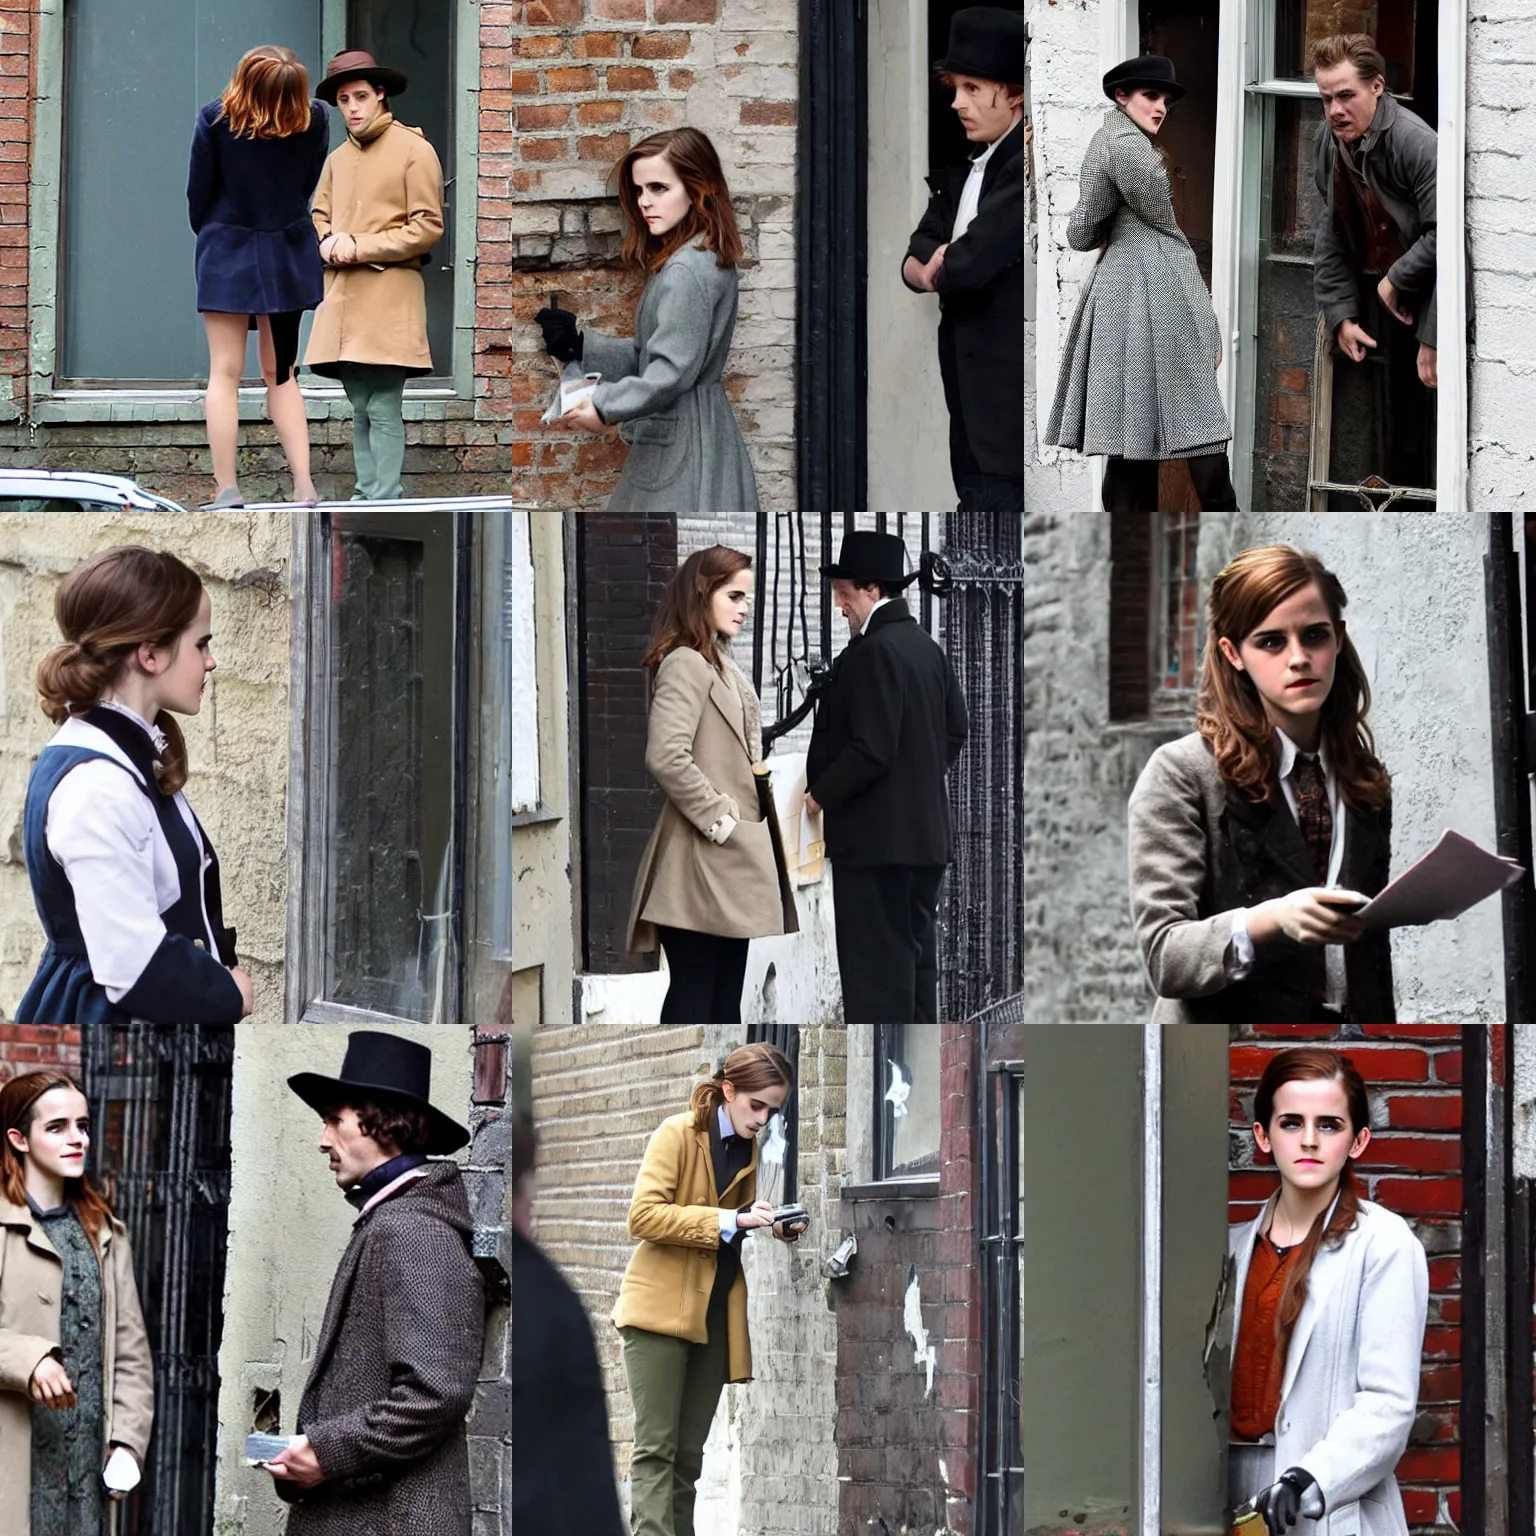 Prompt: Emma Watson dressed as Sherlock Holmes inspecting a broken window in an alley